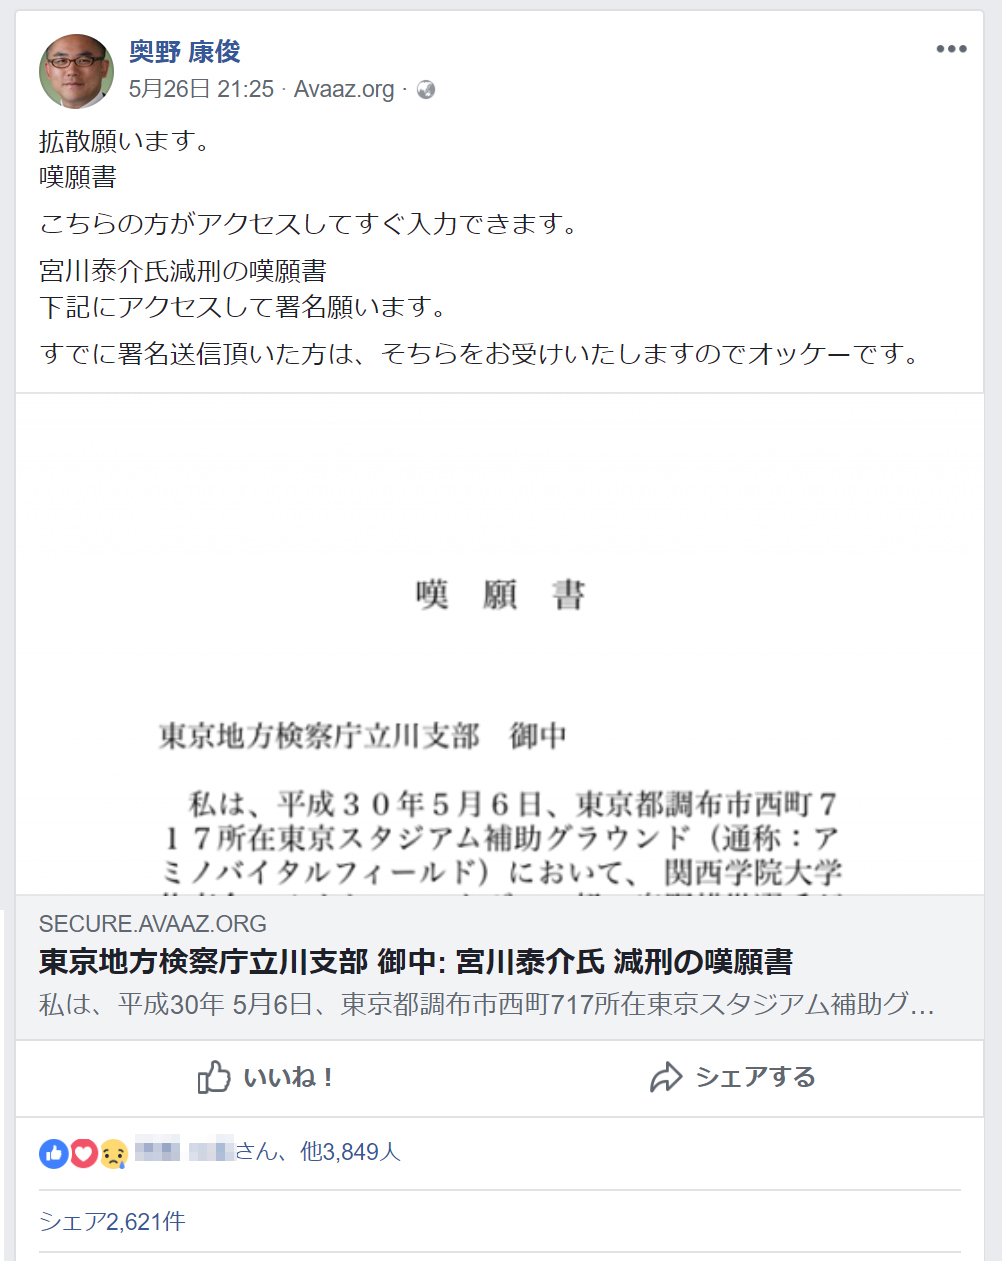 奥野康俊さんは、Facebookで減刑嘆願書の署名をよびかけ（<a href="https://www.facebook.com/okuno.yasutoshi">奥野さんのFacebookページ</a>より）